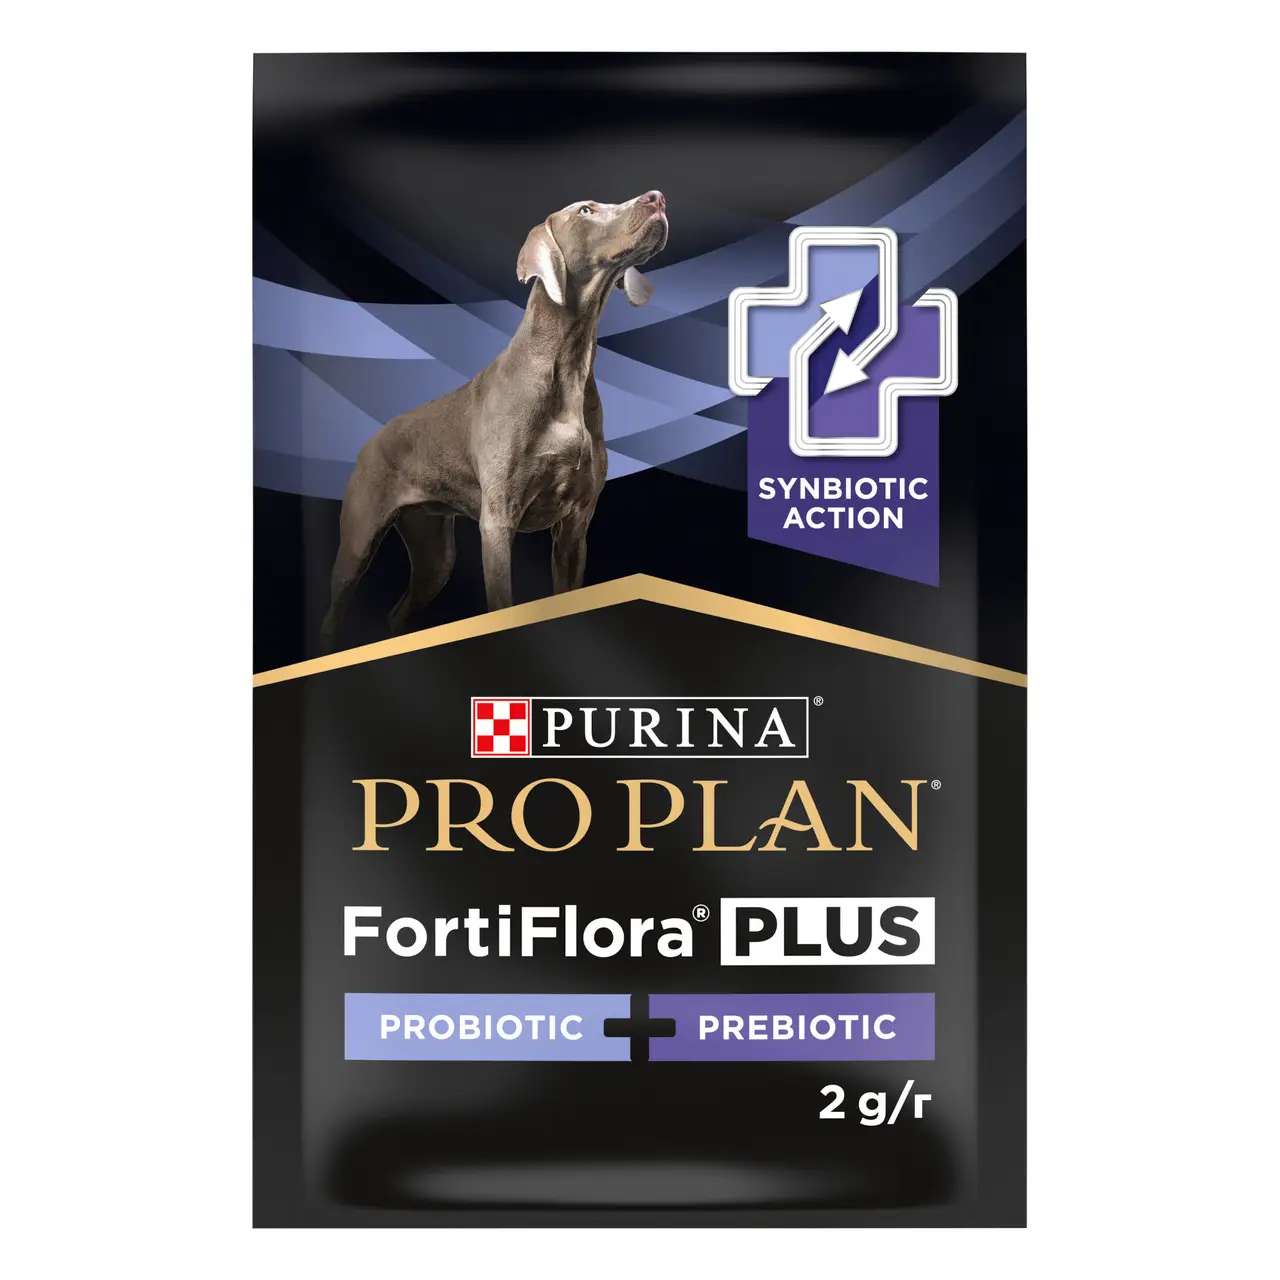 Pro Plan FortiFlora Plus пробіотик з пребіотиком для собак та цуценят (30шт)6